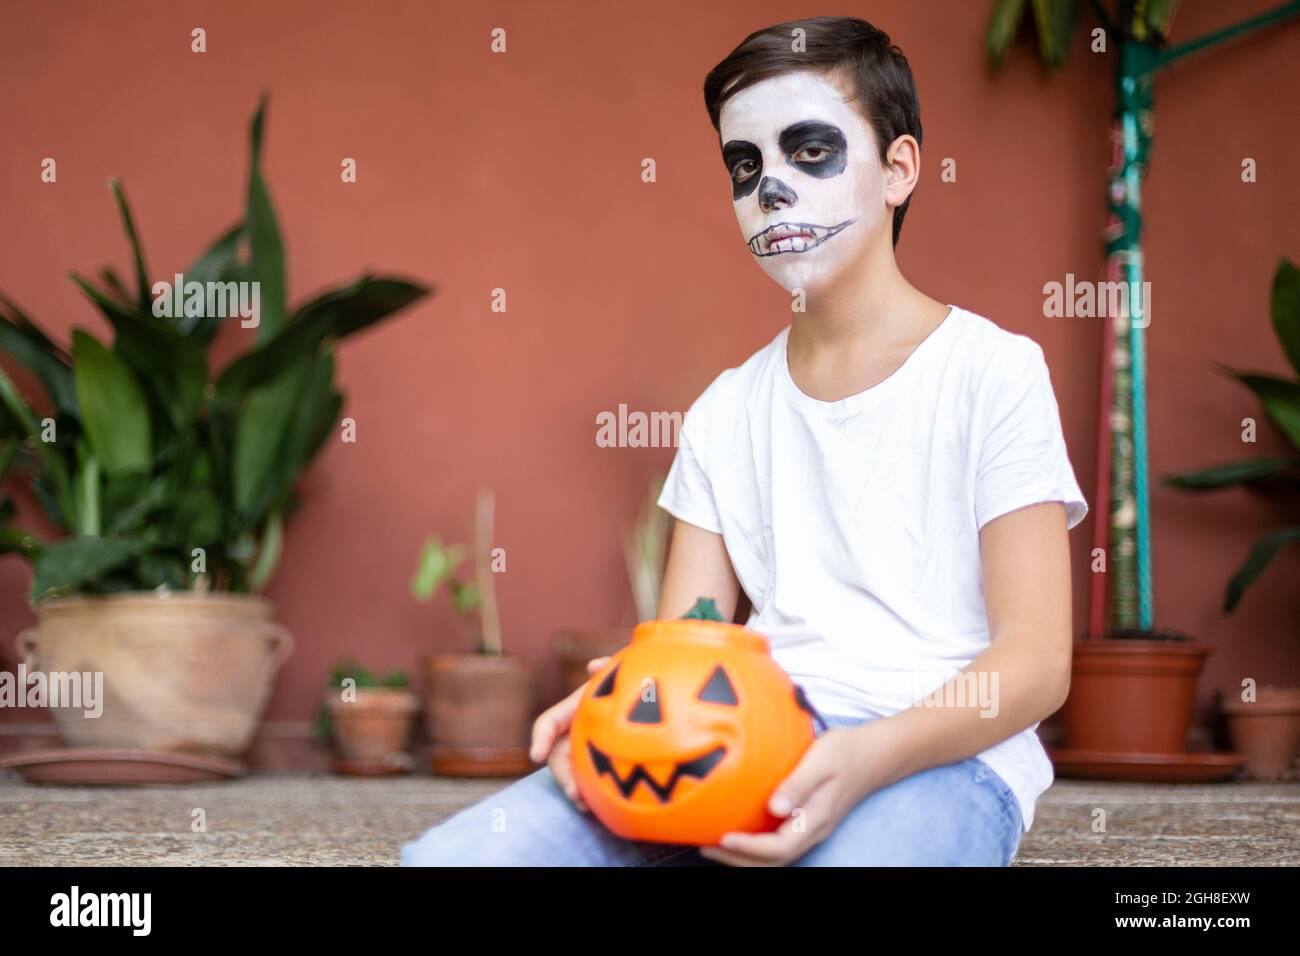 Garçon assis à l'entrée de sa maison. Il est sérieux et avec maquillage comme un crâne pour la célébration d'Halloween. Espace pour le texte. Banque D'Images